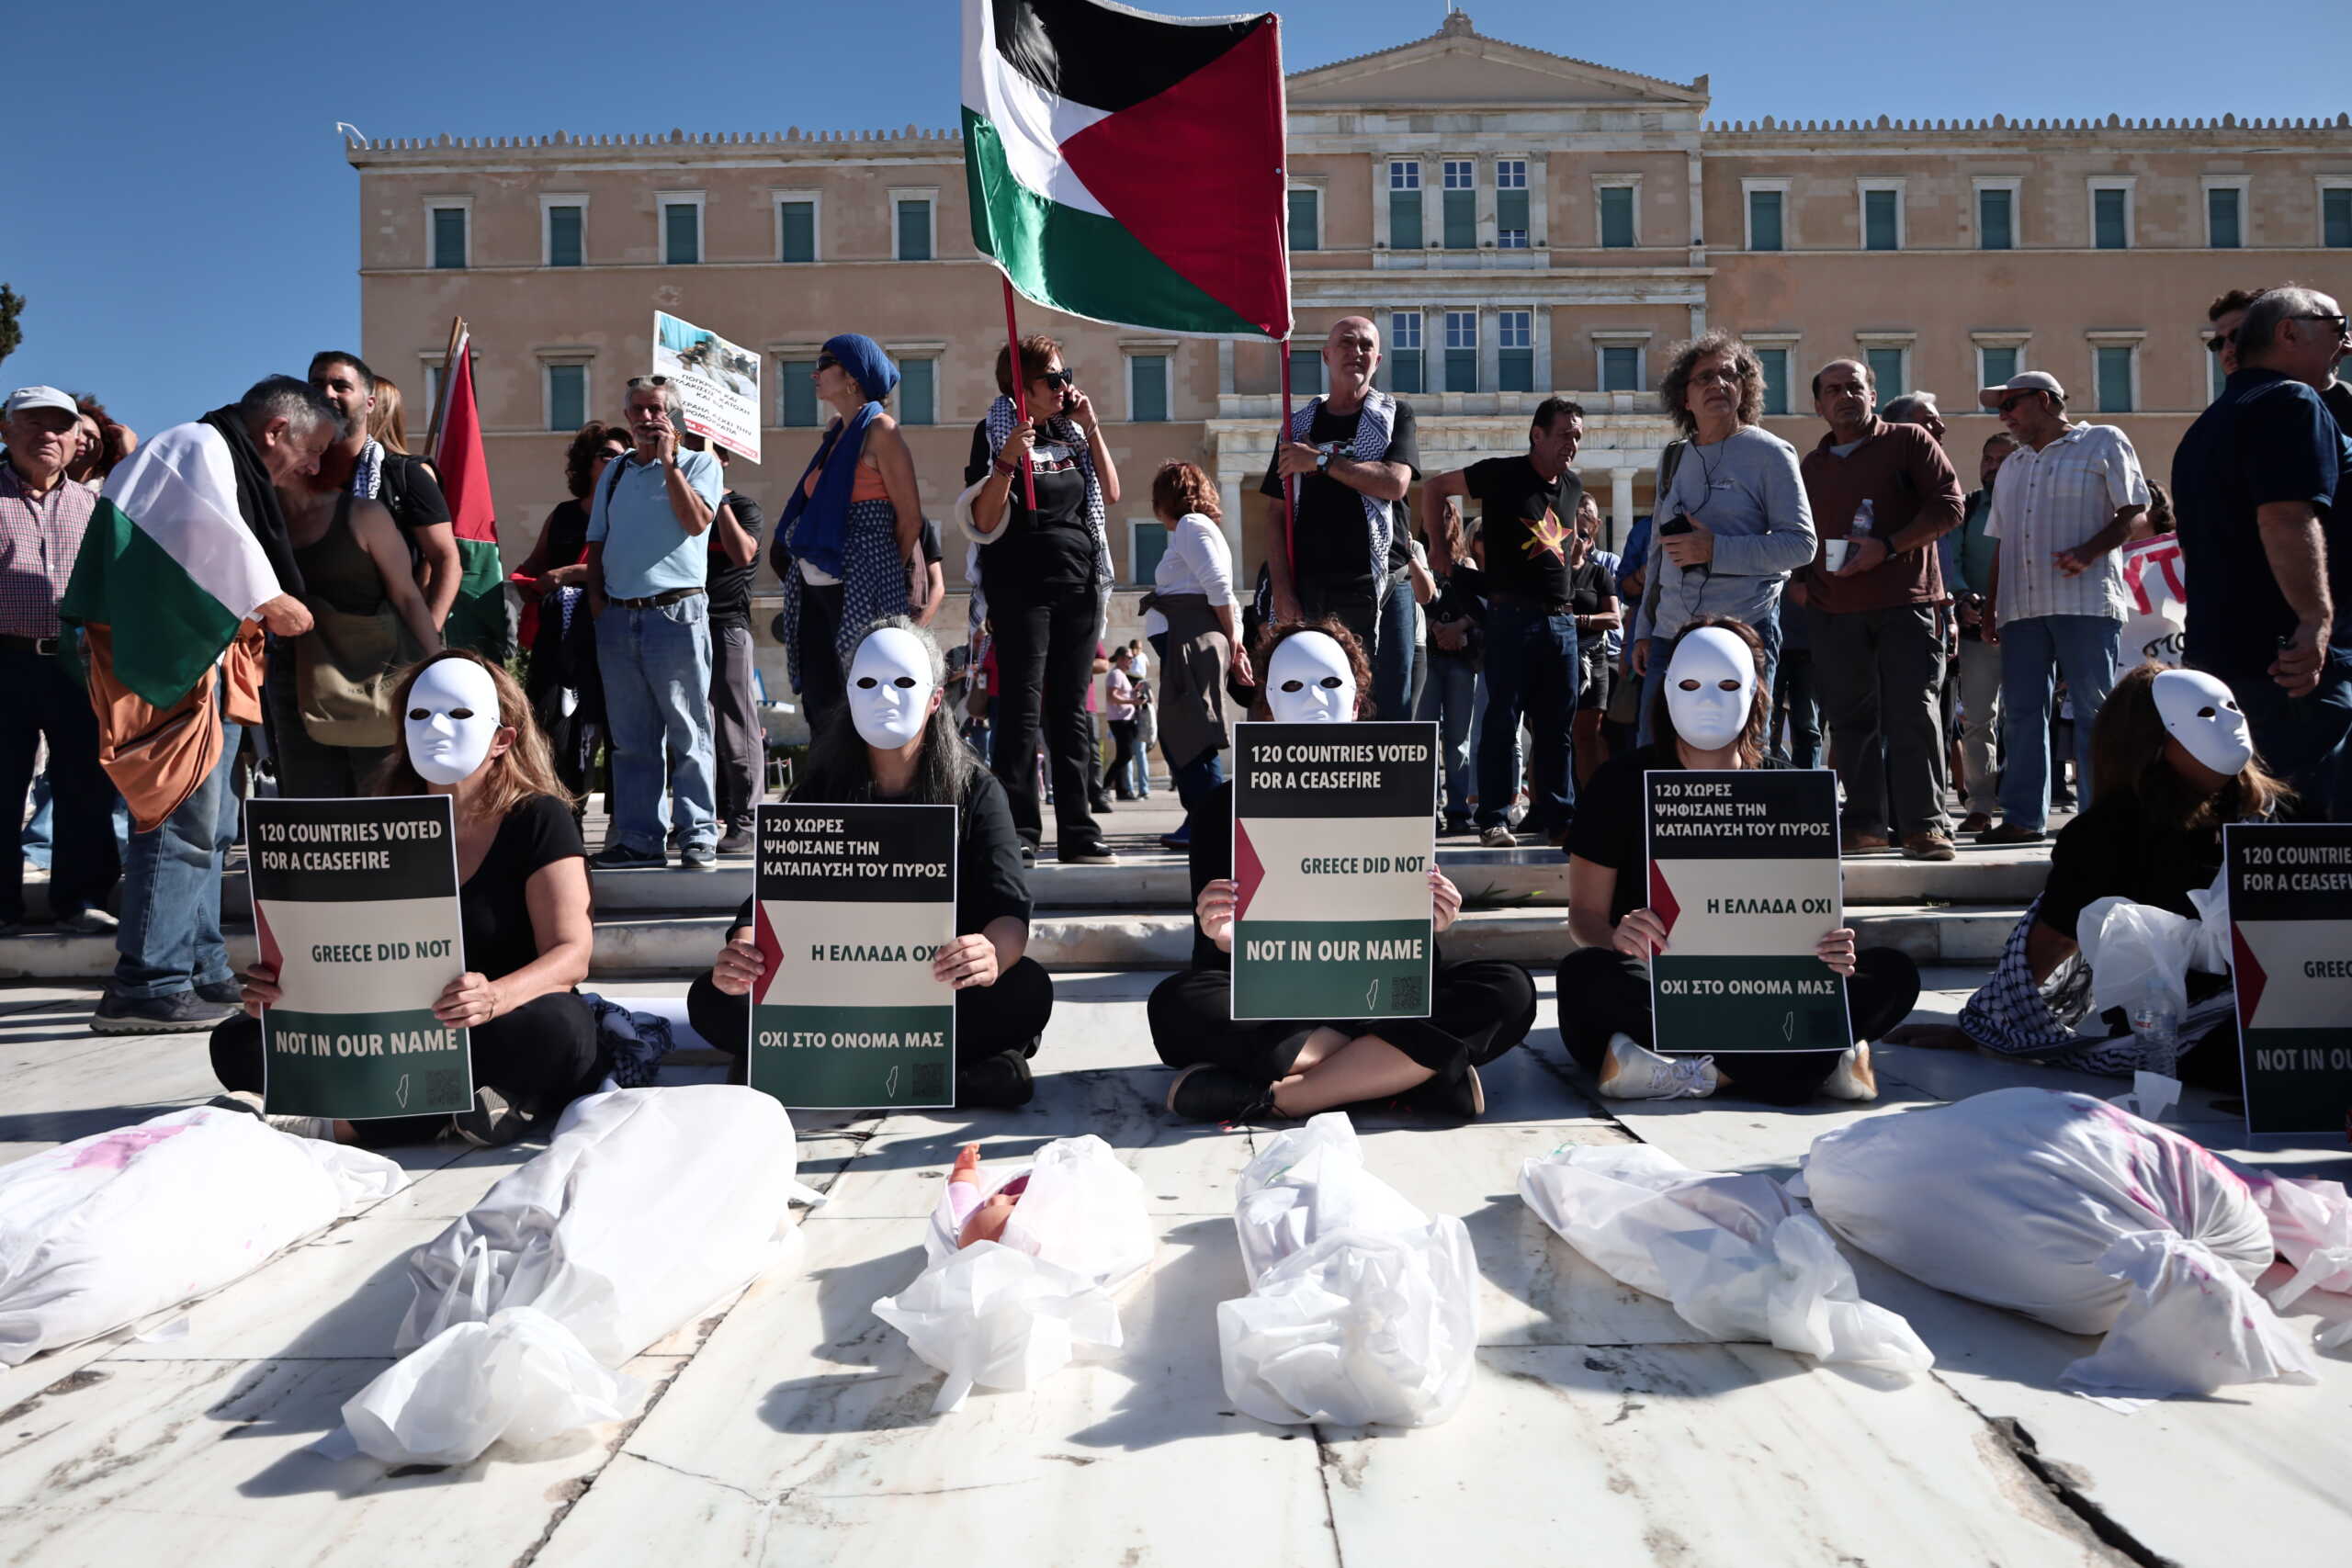 Αποκαταστάθηκε η κυκλοφορία στο κέντρο της Αθήνας – Ολοκληρώθηκε το συλλαλητήριο του ΠΑΜΕ για την Παλαιστίνη